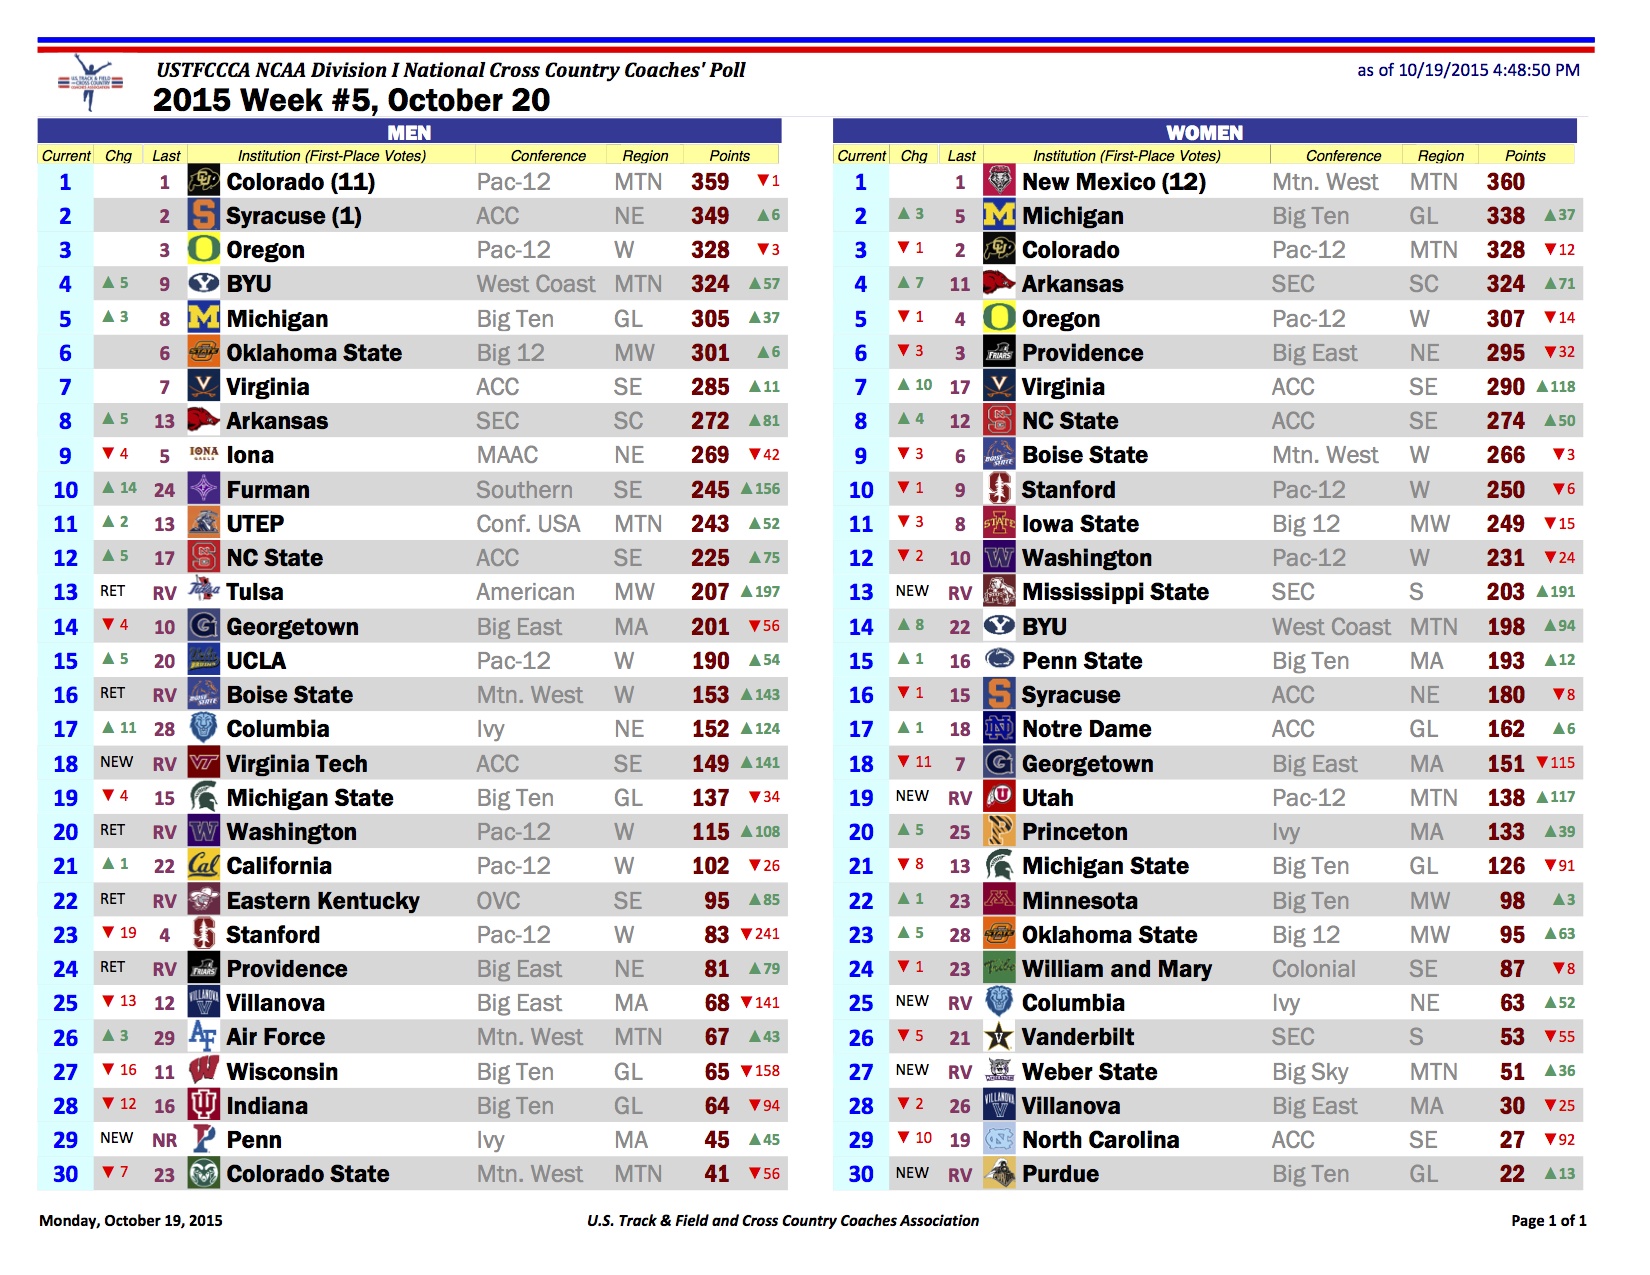 USTFCCCA D1 National Rankings Week 5 FloTrack